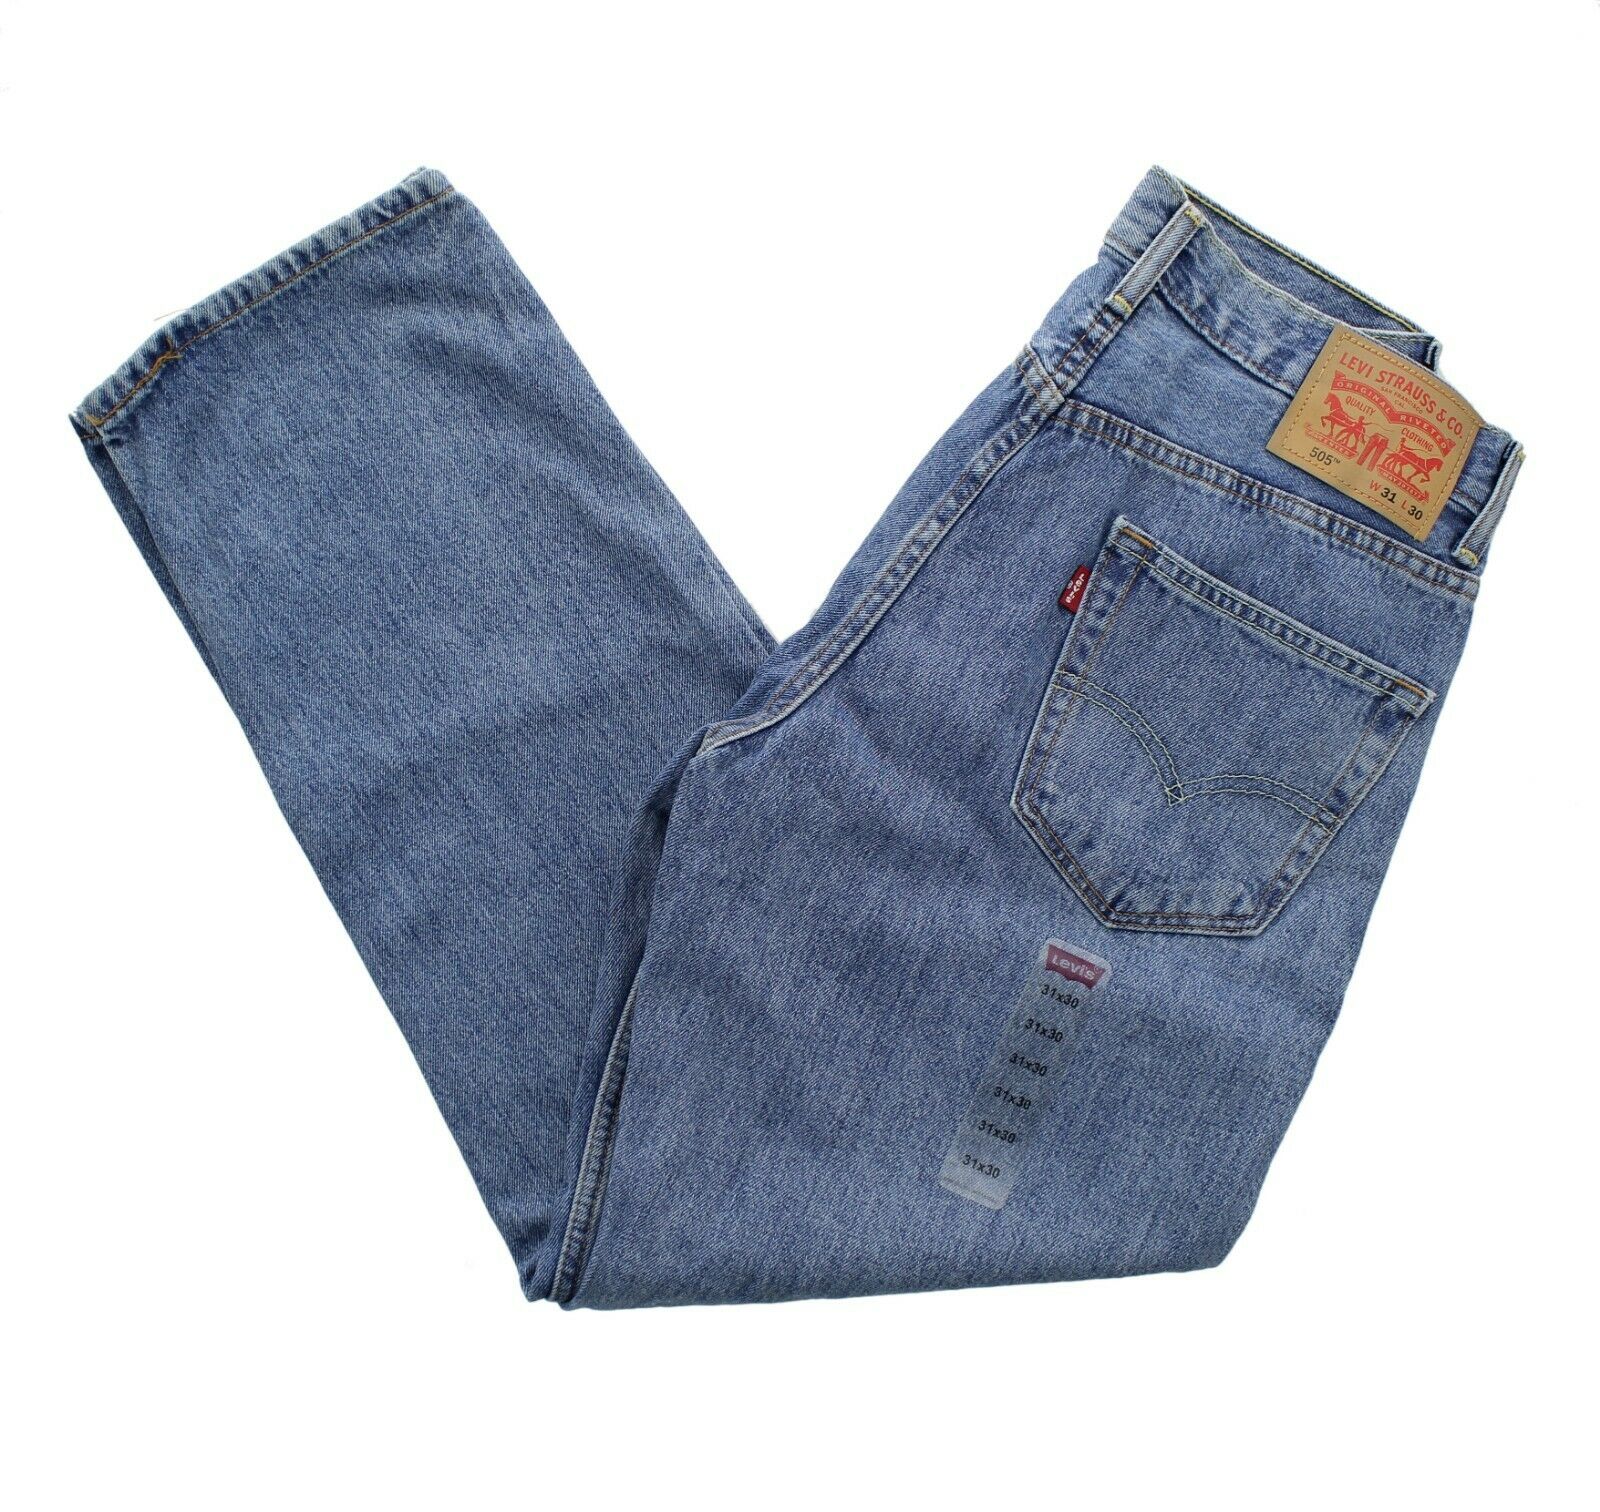 Levi’s Men’s 505 Jeans Regular Fit Denim Blue Jean Pants Tapered or ...